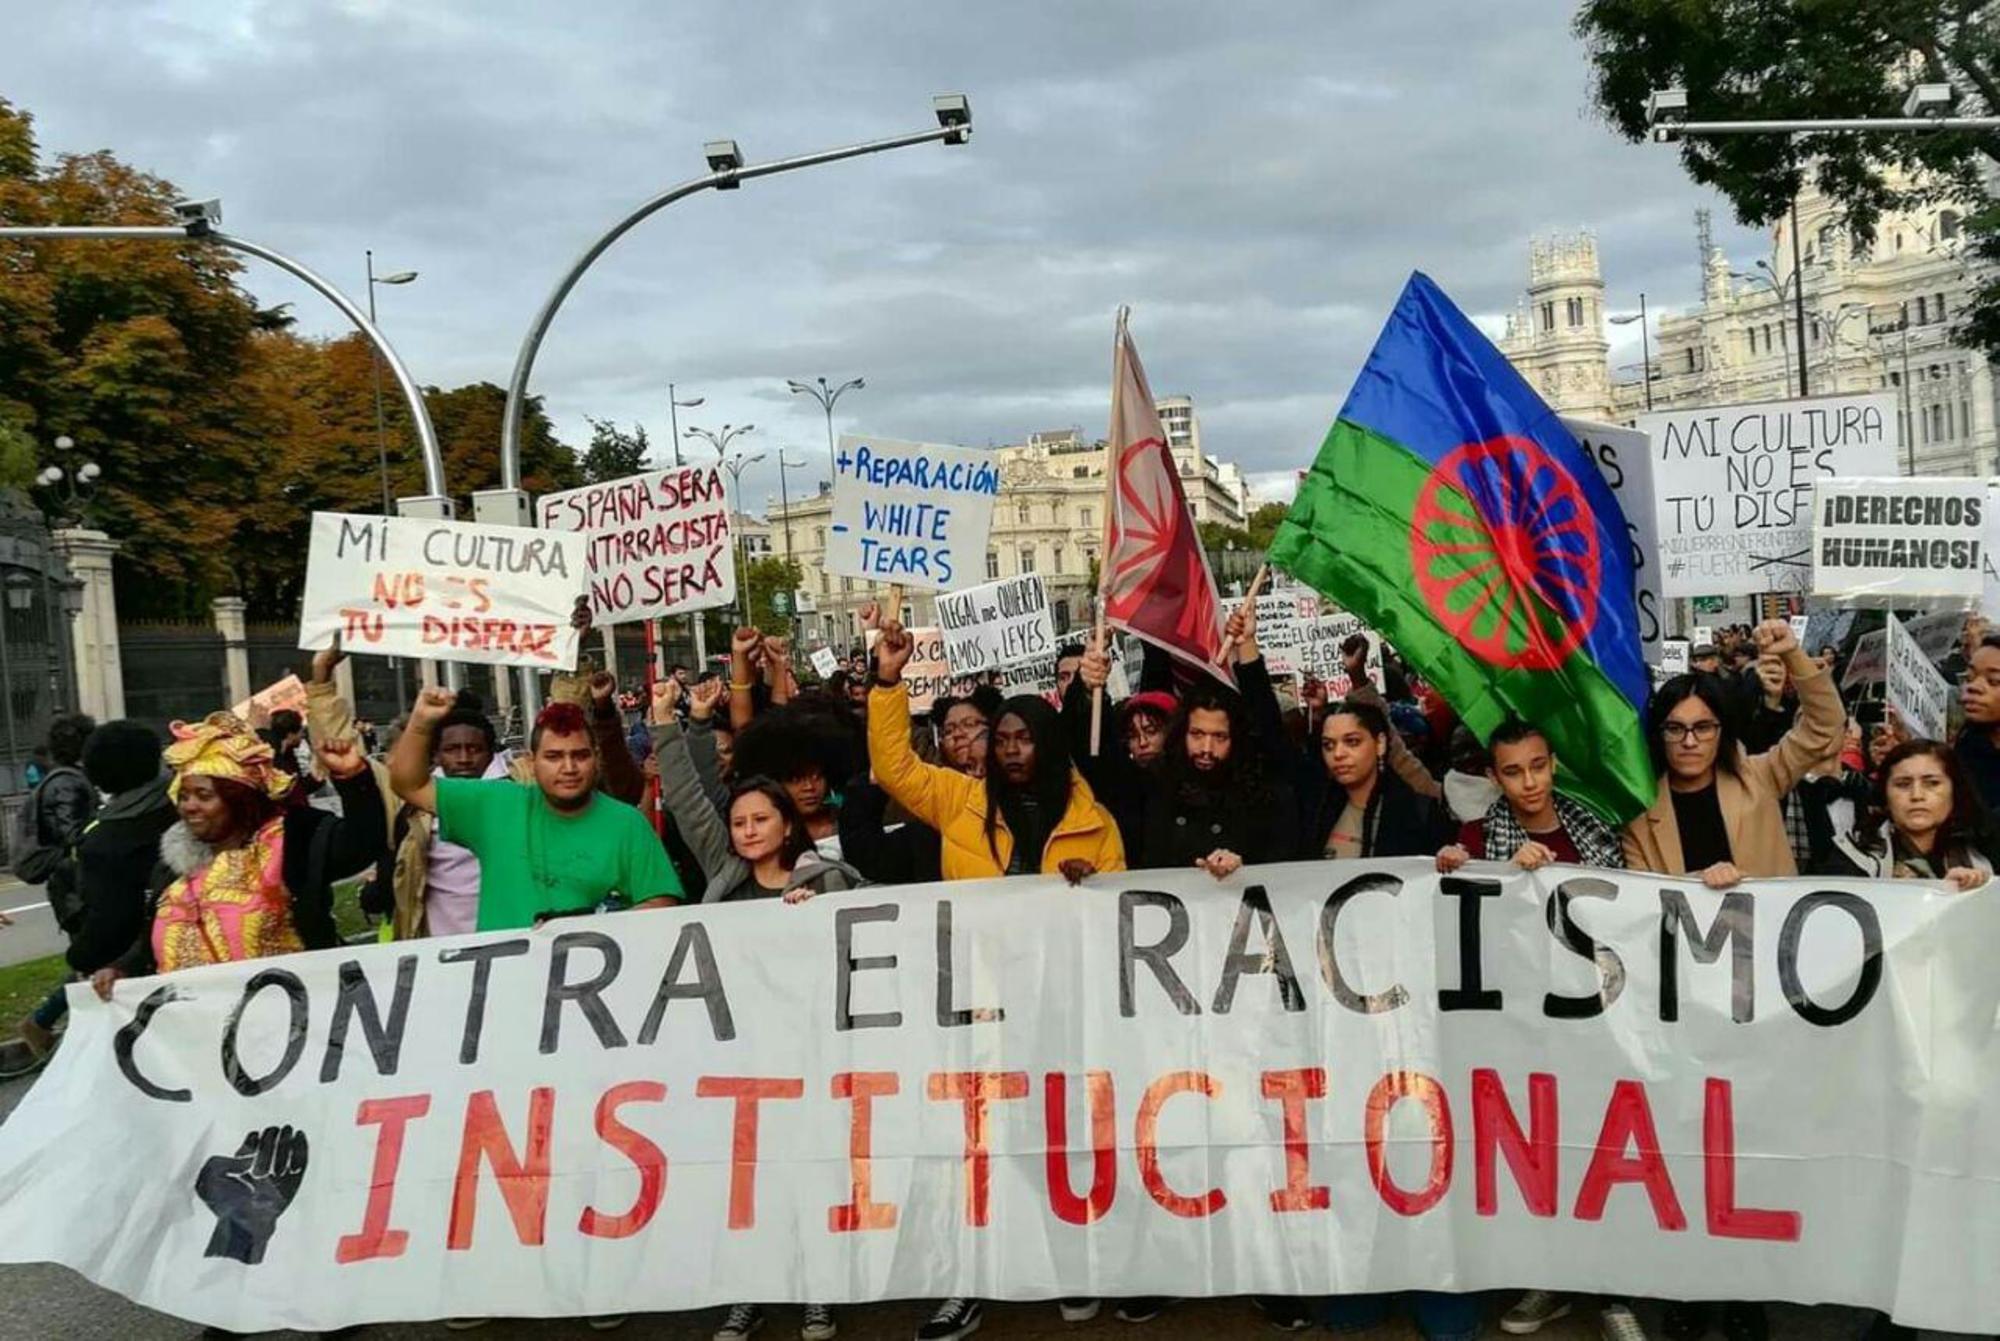 Manifestación contra racismo romaniv